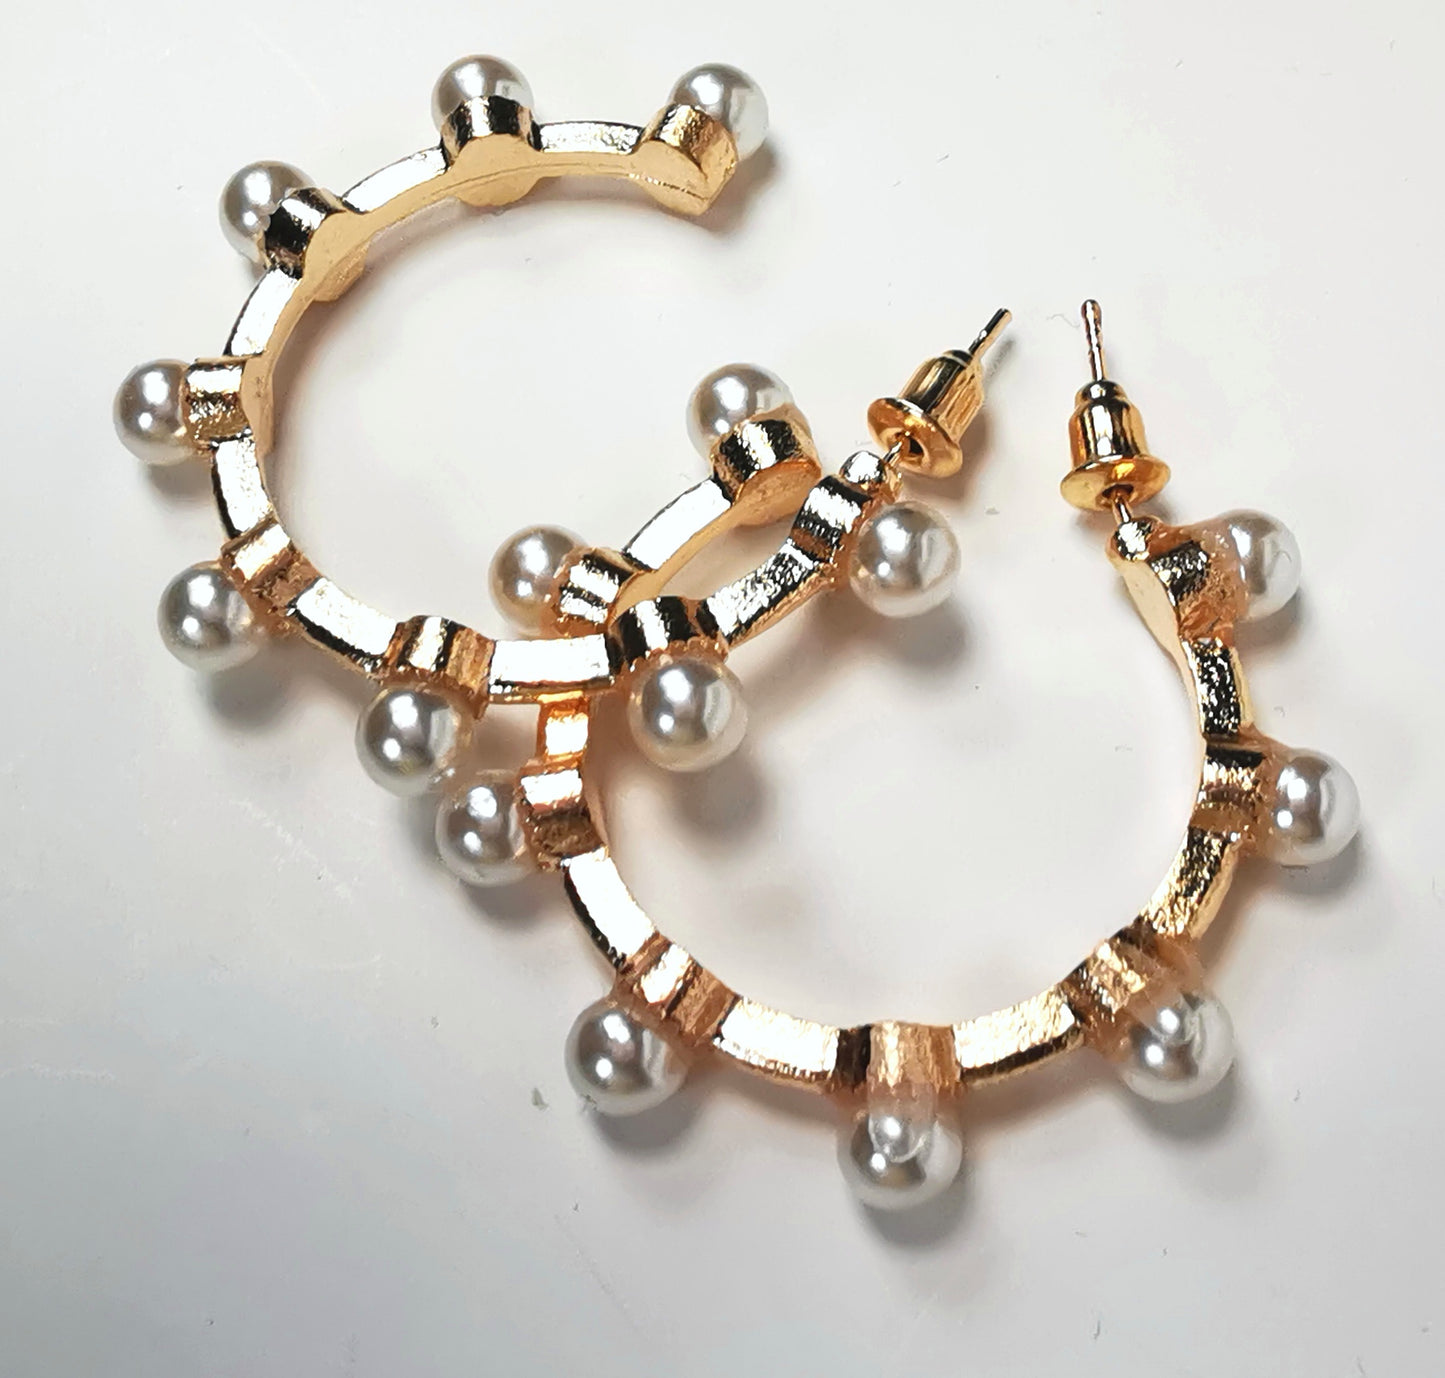 Boucles d'oreilles créoles fantaisie, en alliage doré, 35mm de diamètre, sur clous, avec 8 perles fantaisie sur la périphérie. Présentées l'une à coté de l'autre, posées sur fond blanc. Vue de dessus.